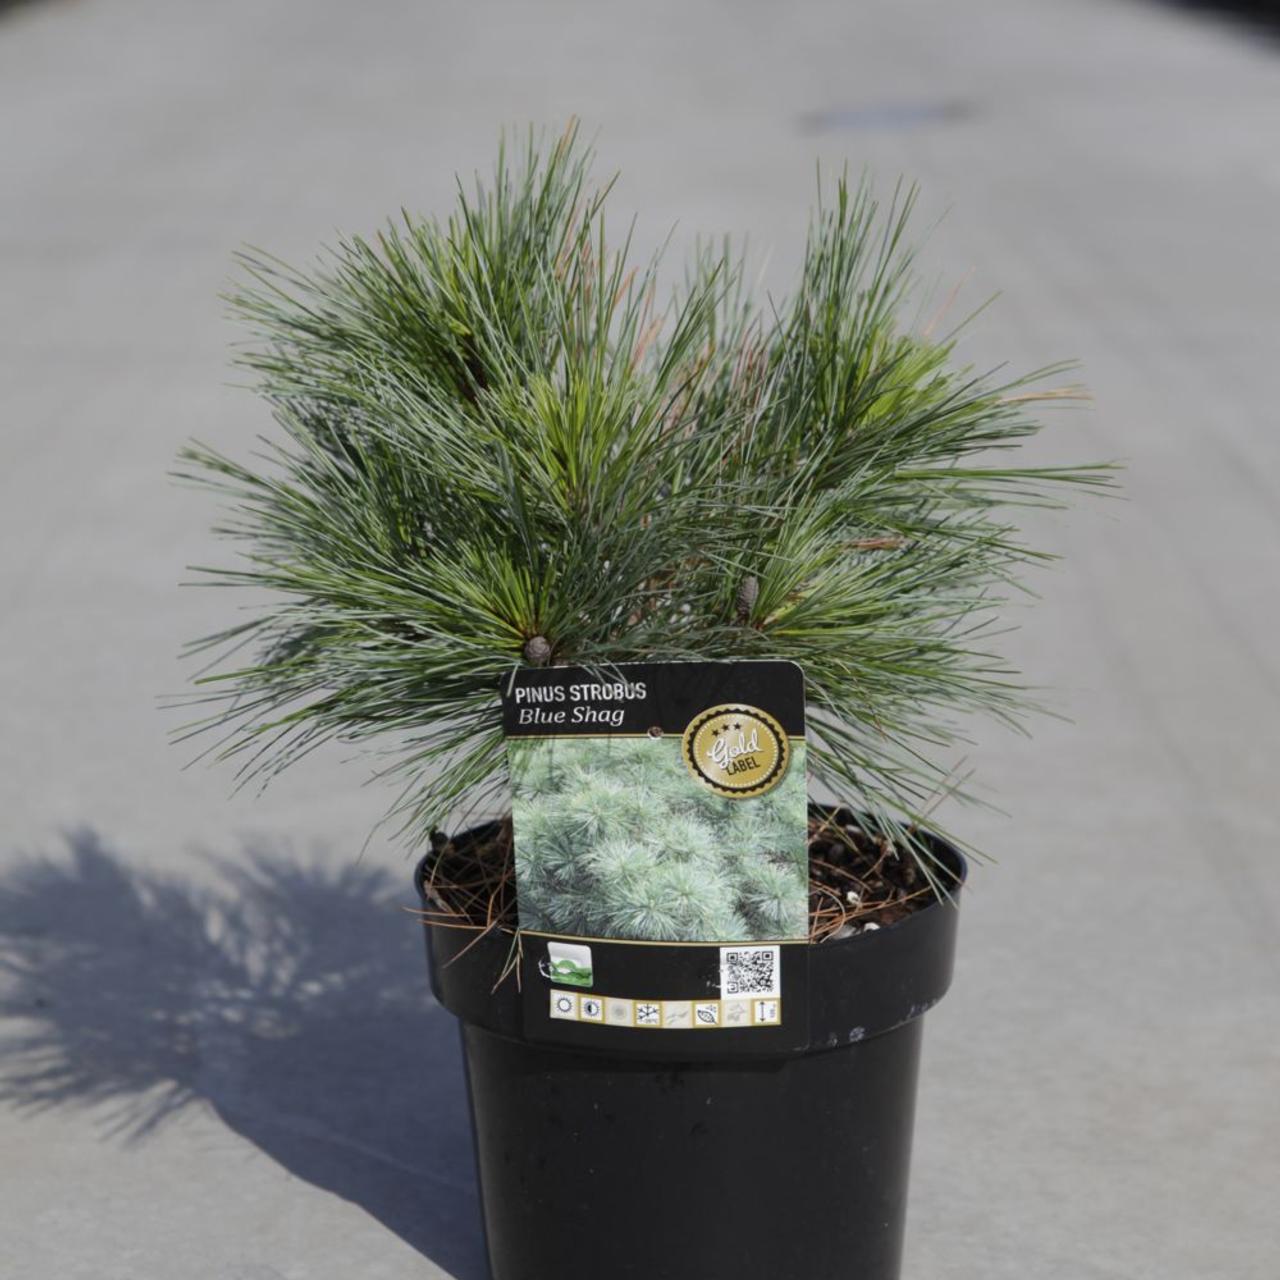 Pinus strobus 'Blue Shag' plant